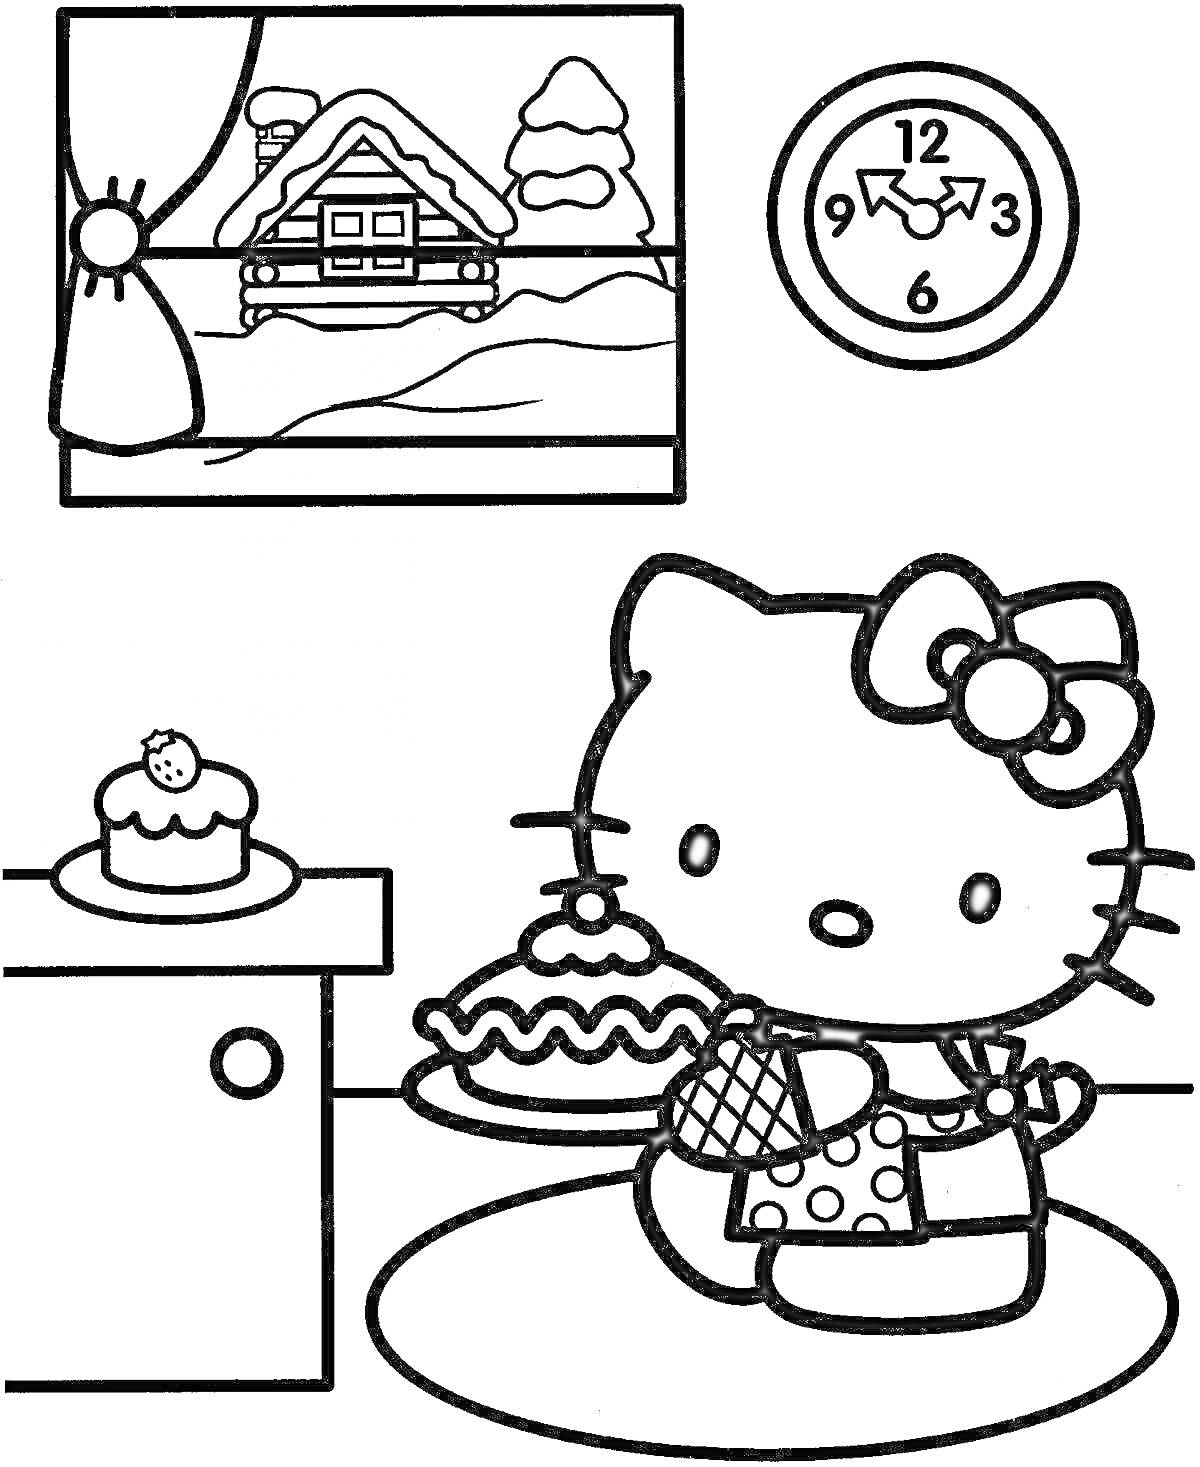 Раскраска Хелло Китти в комнате с пирогом у окна. Хелло Китти держит пирог, на столе другой пирог, окно с видом на дом и часы.